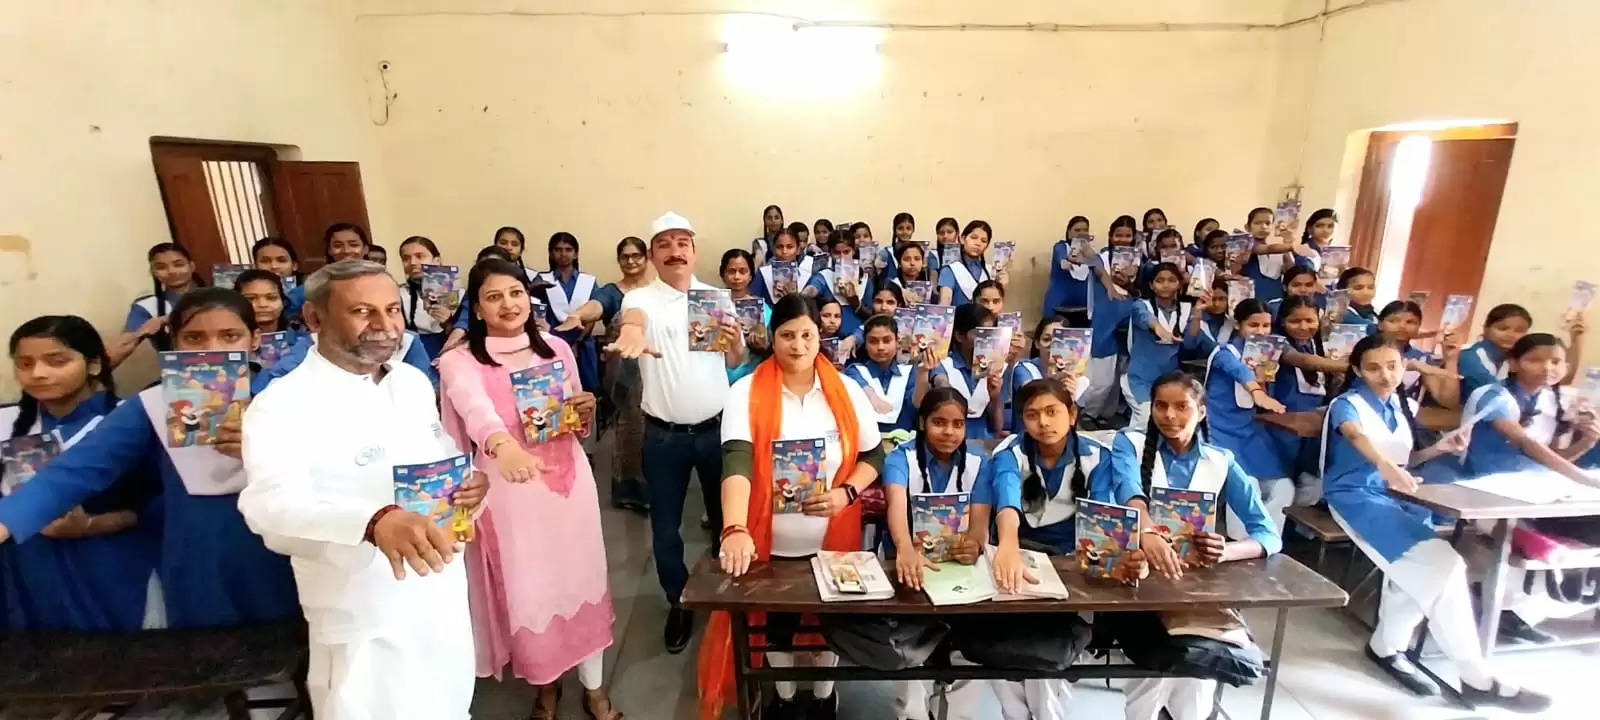  Varanasi News: नमामि गंगे ने छात्राओं में वितरित की स्वच्छता का संदेश दे रही चाचा चौधरी की कॉमिक्स